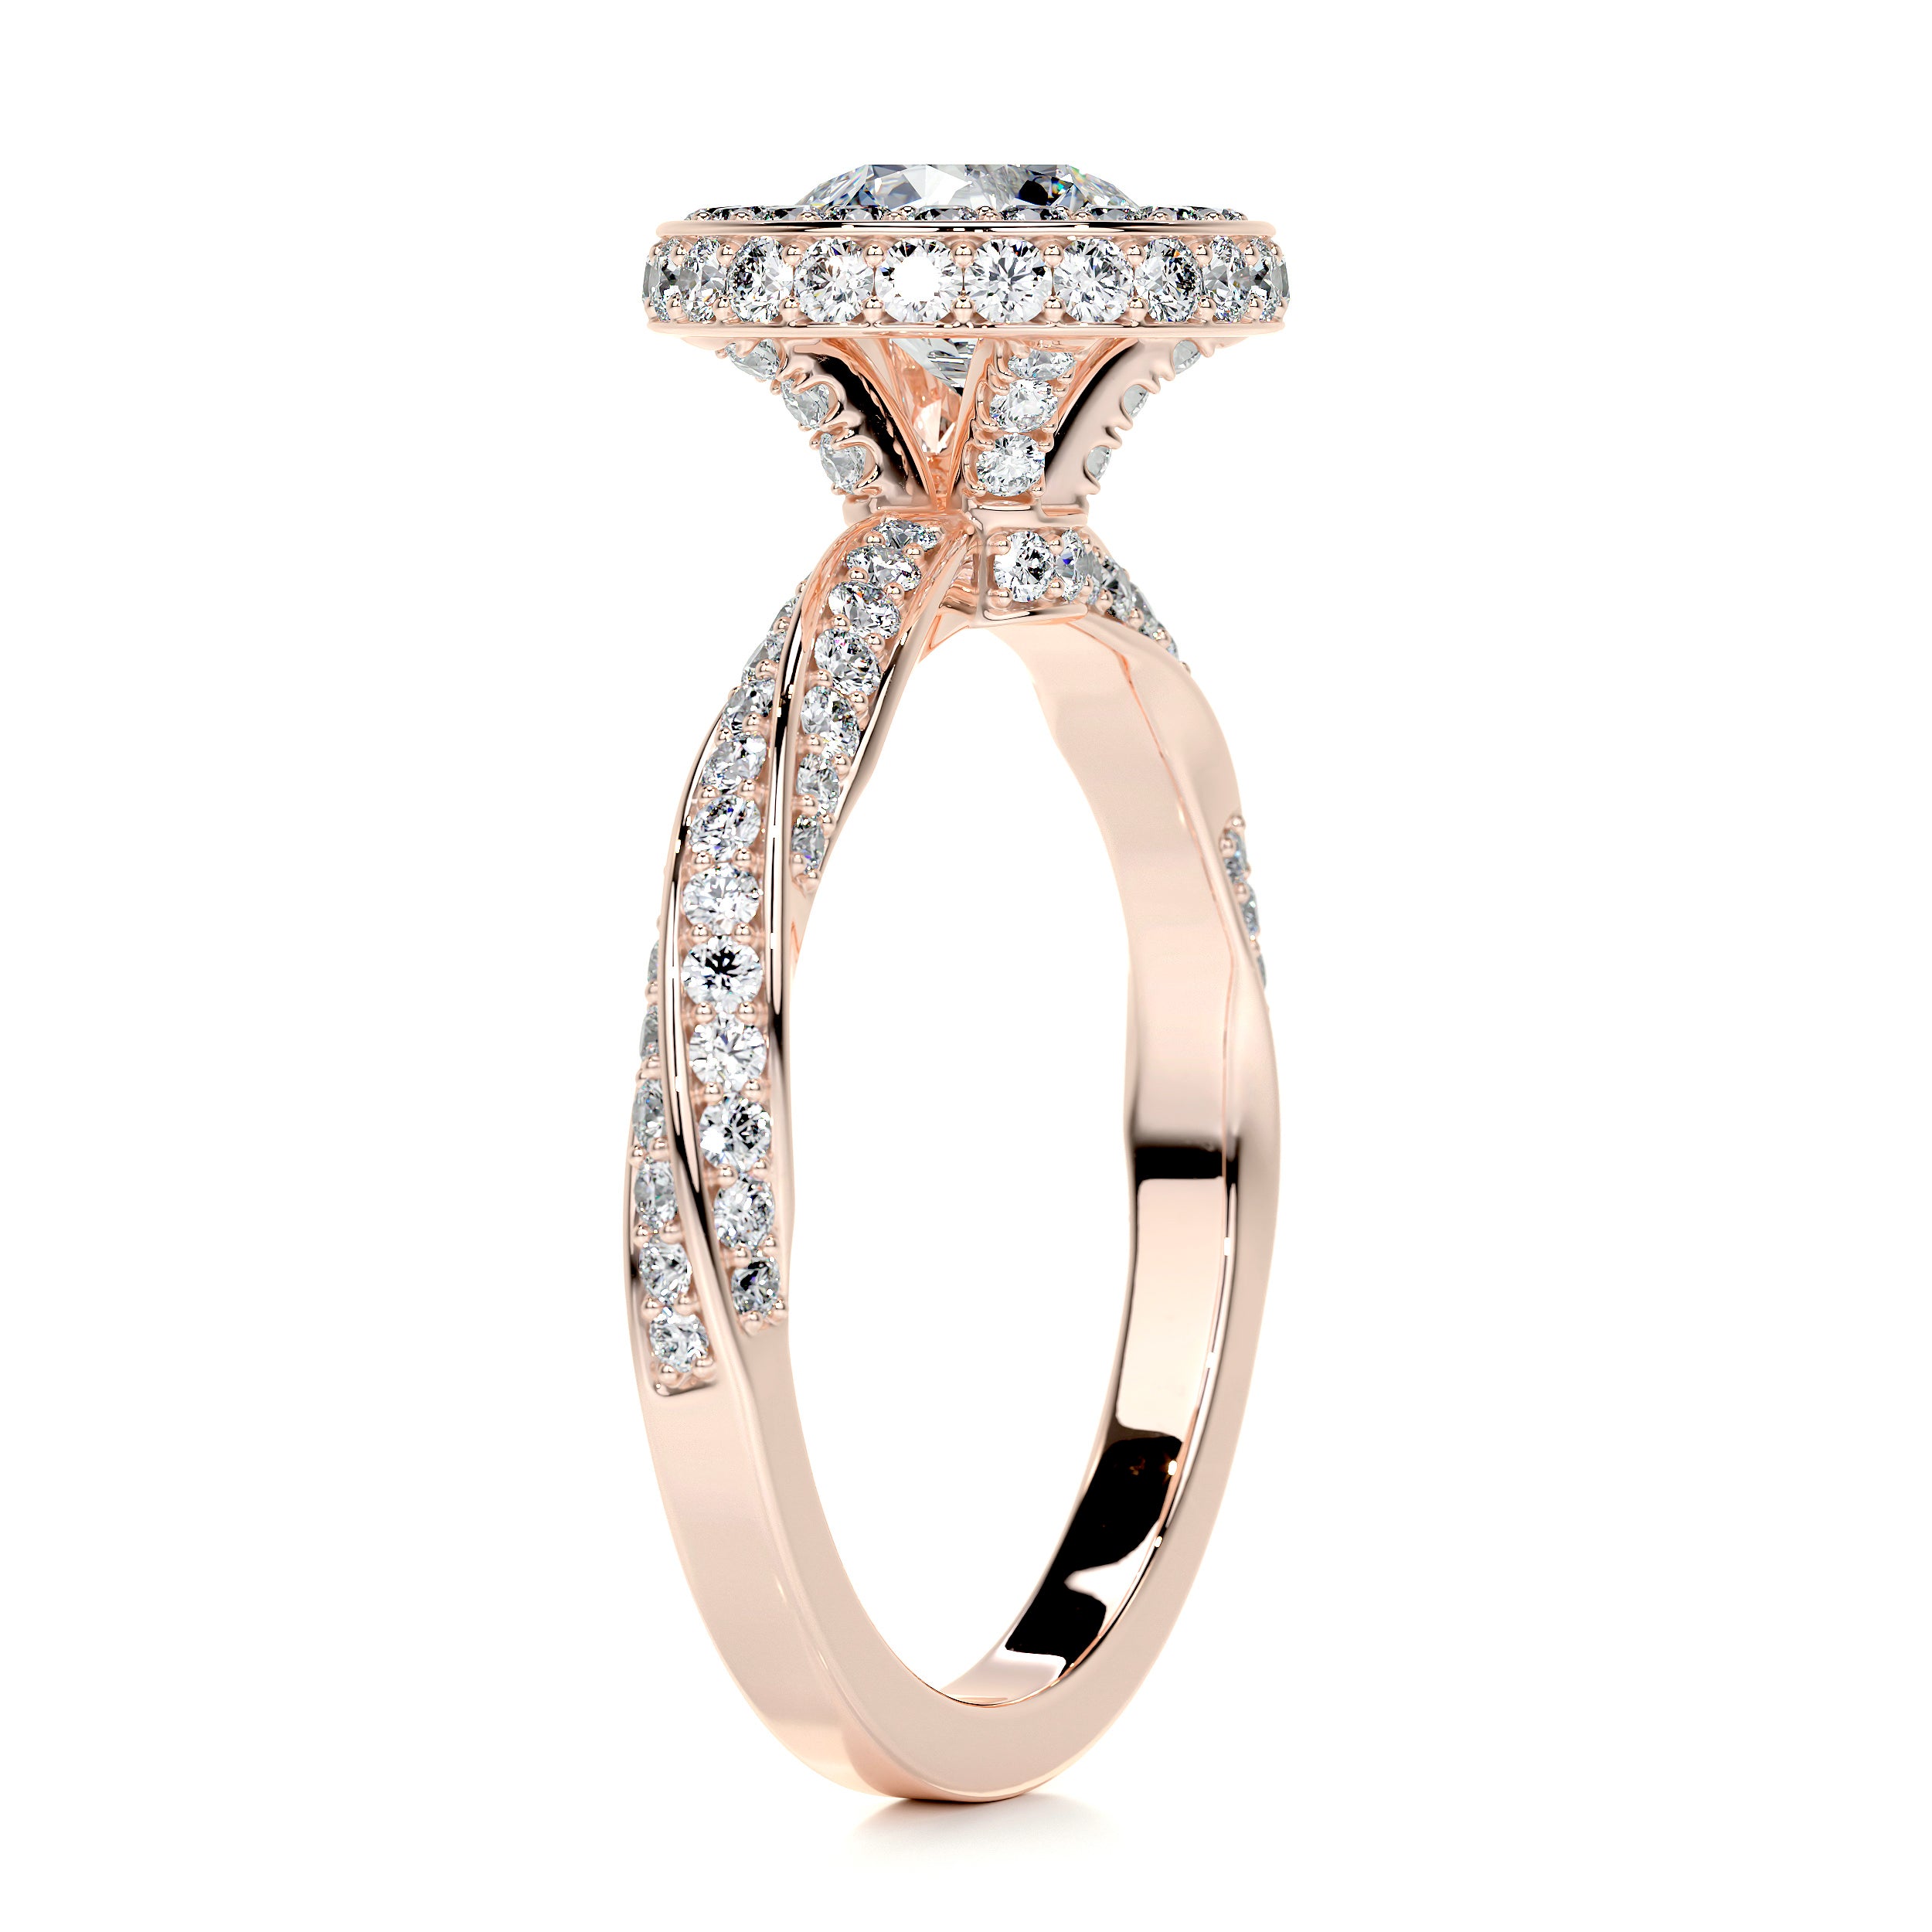 Sarina Diamond Engagement Ring -14K Rose Gold